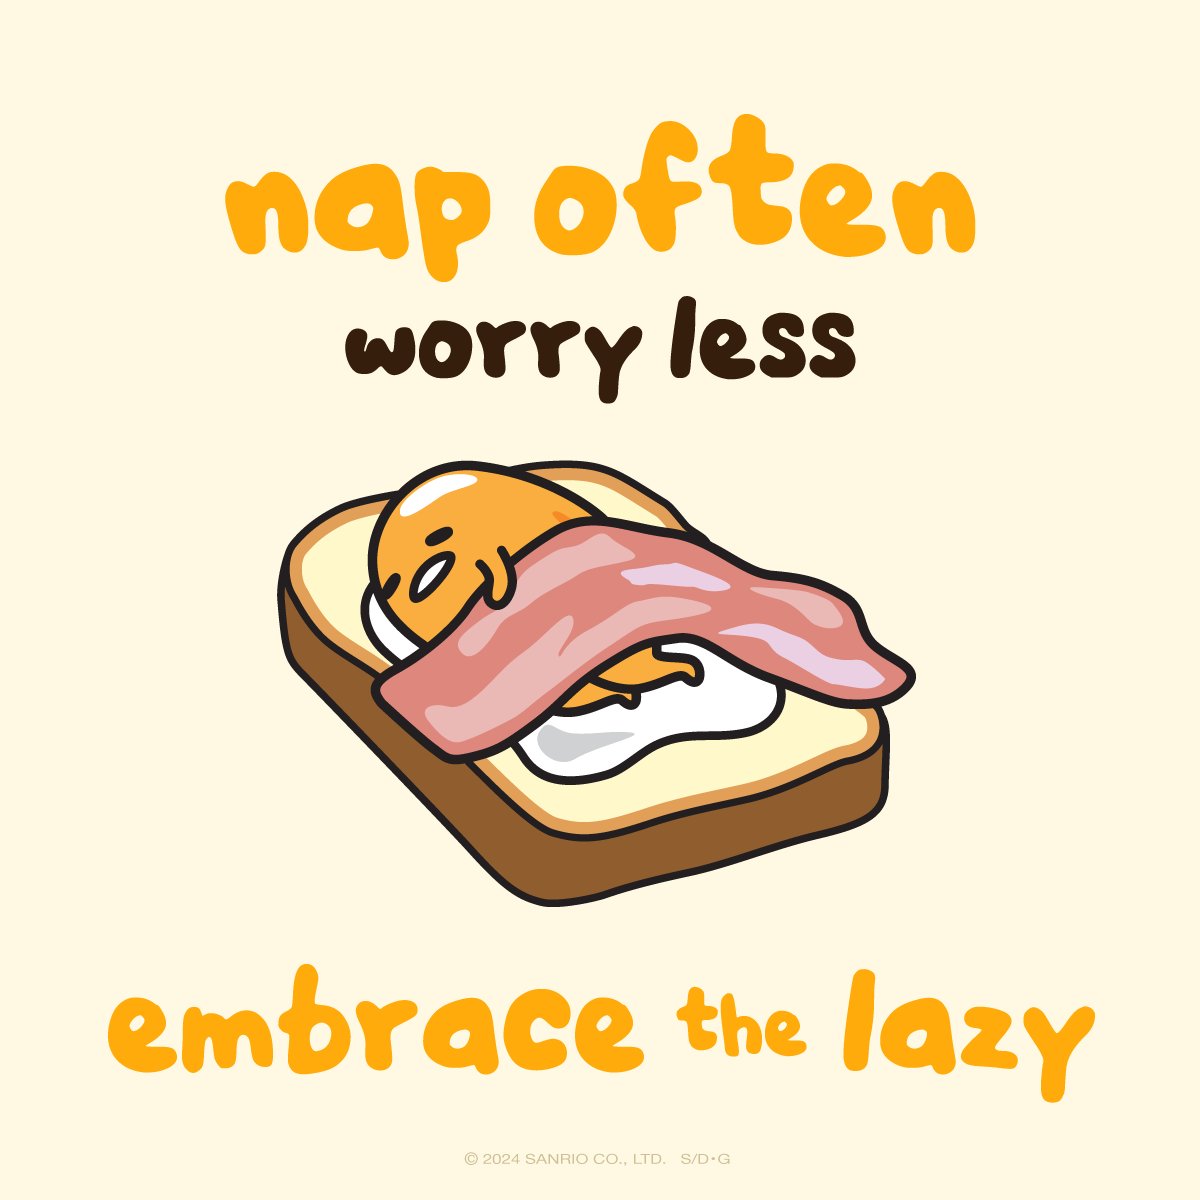 Embrace the lazy today 💛#mondaymotivation